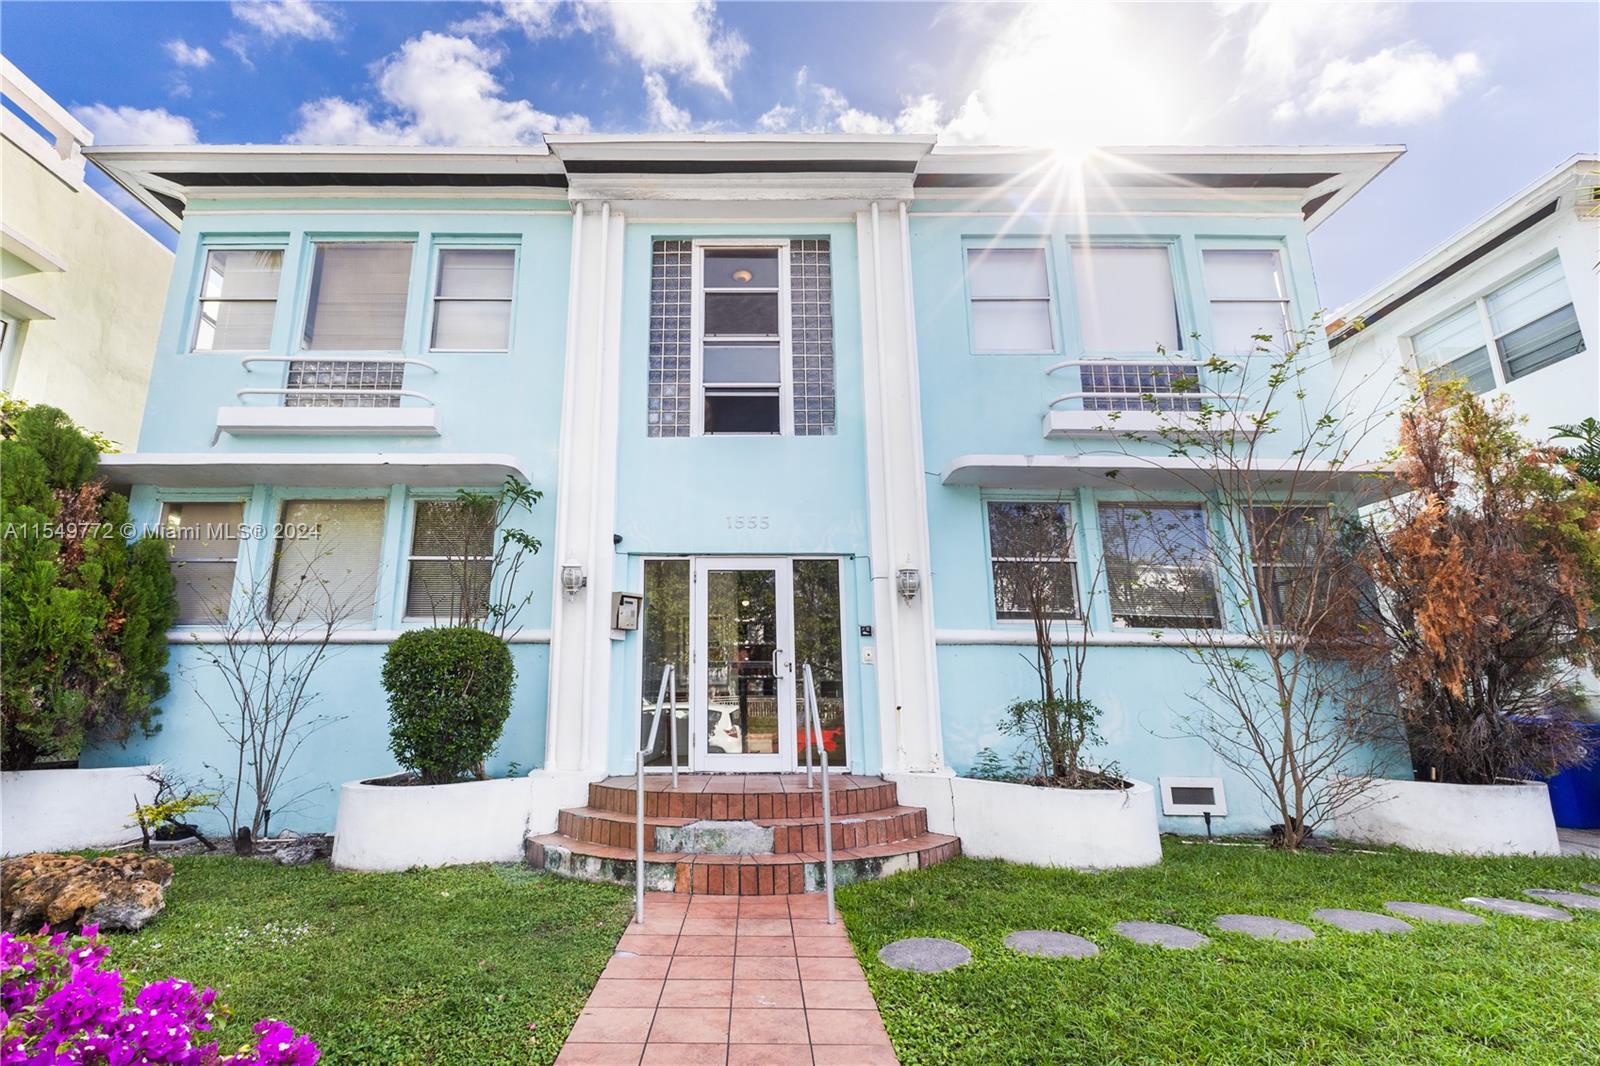 Property for Sale at 1555 Pennsylvania Ave 210, Miami Beach, Miami-Dade County, Florida - Bedrooms: 1 
Bathrooms: 1  - $225,000